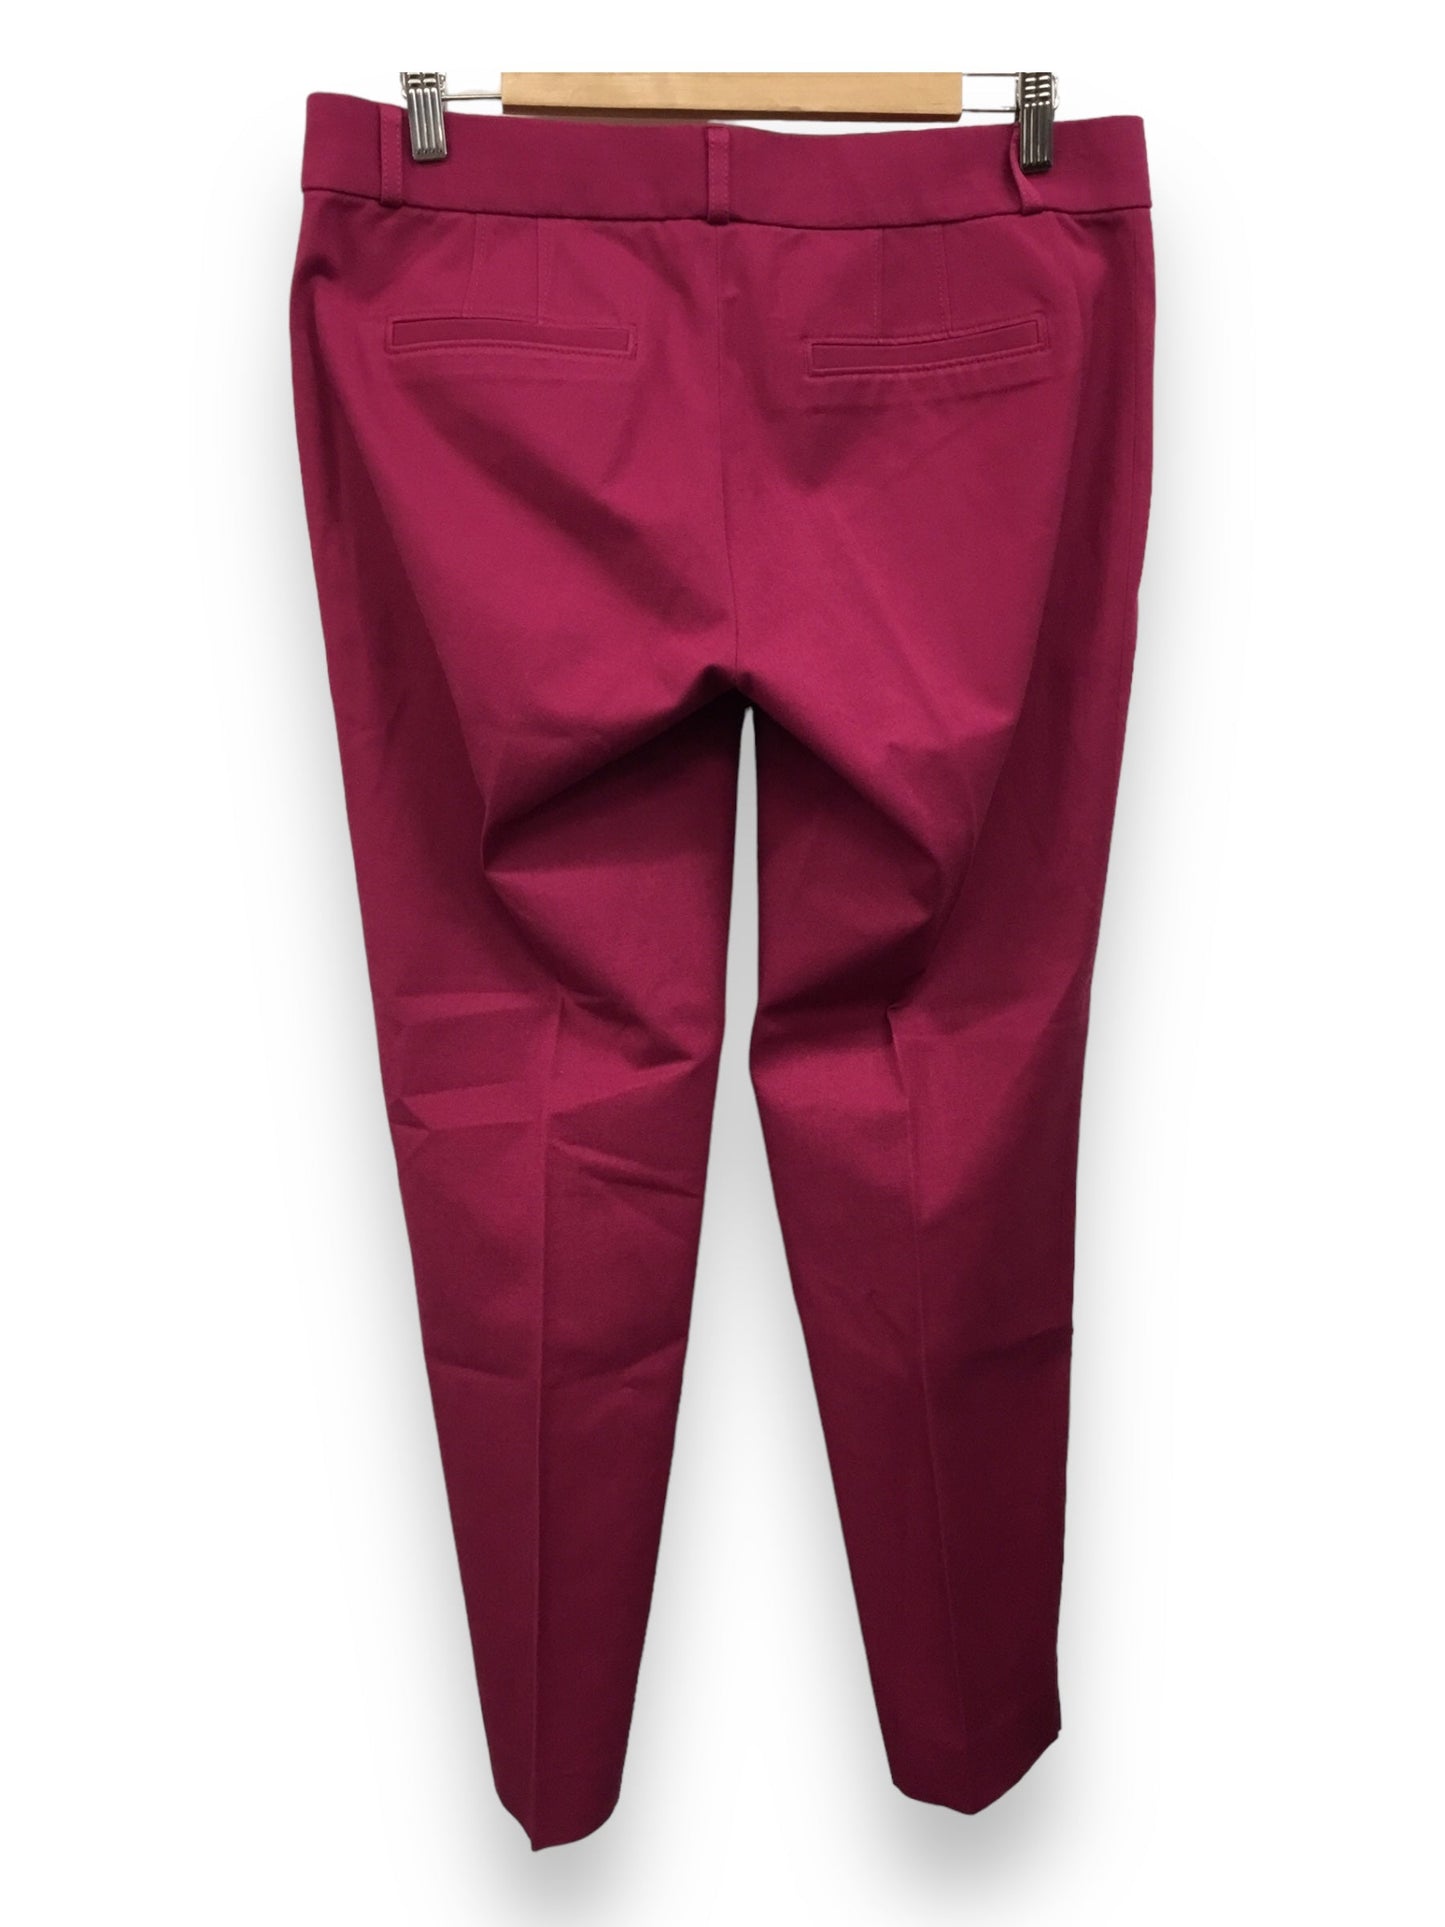 Pink Pants Dress Banana Republic, Size 8